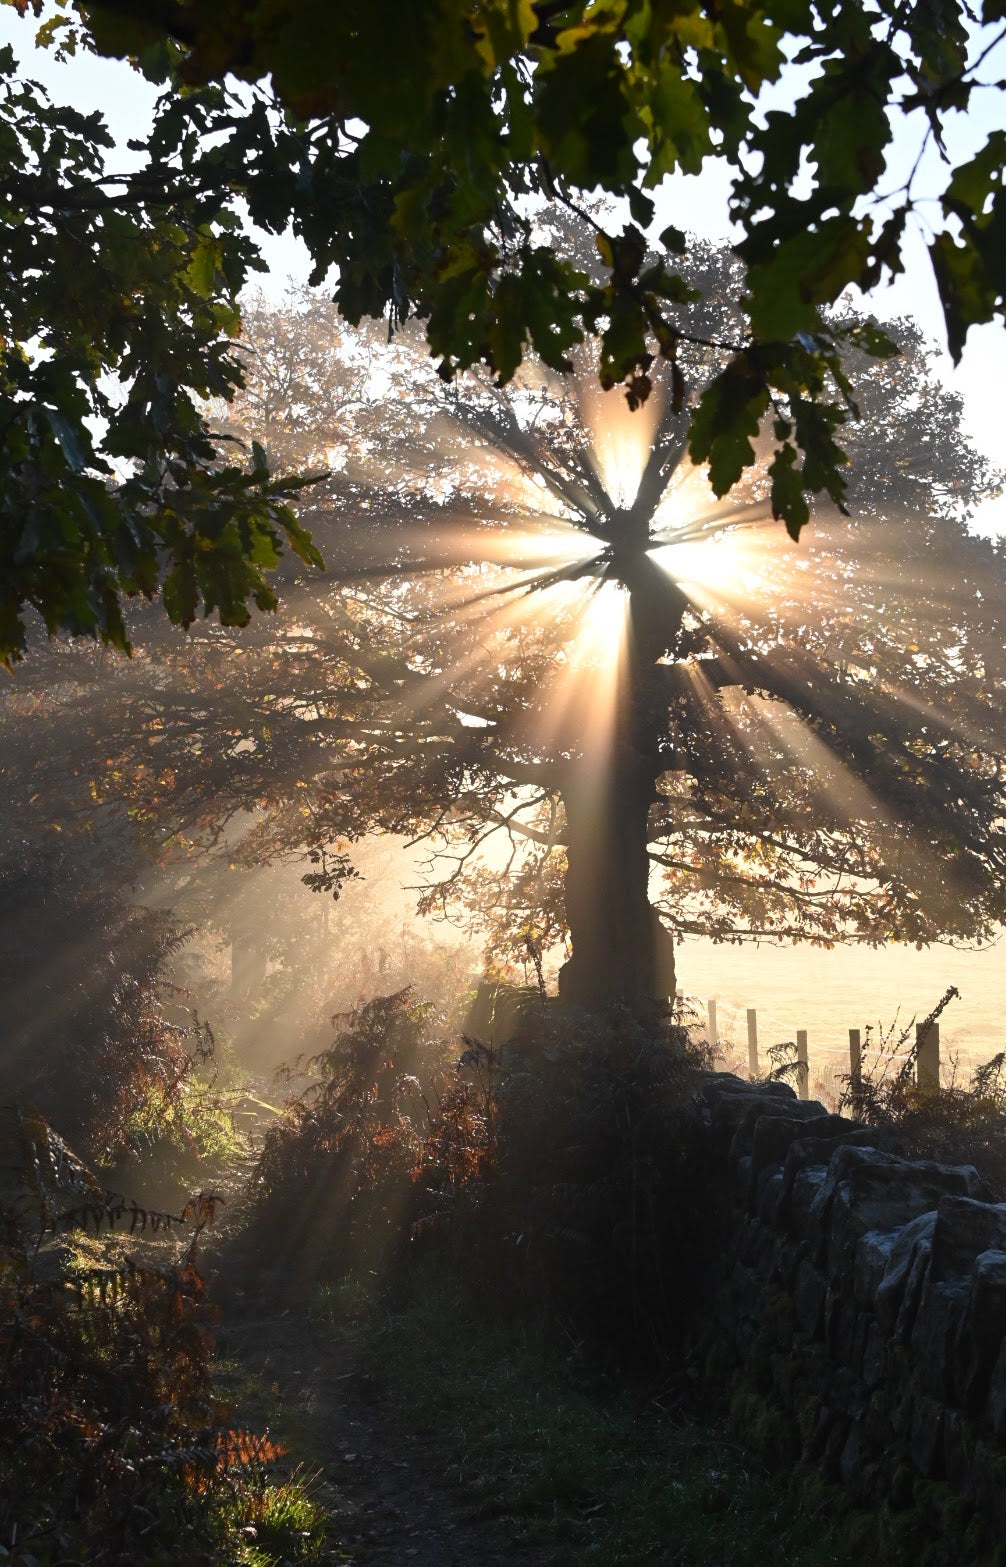 sunbeaming through an oak tree